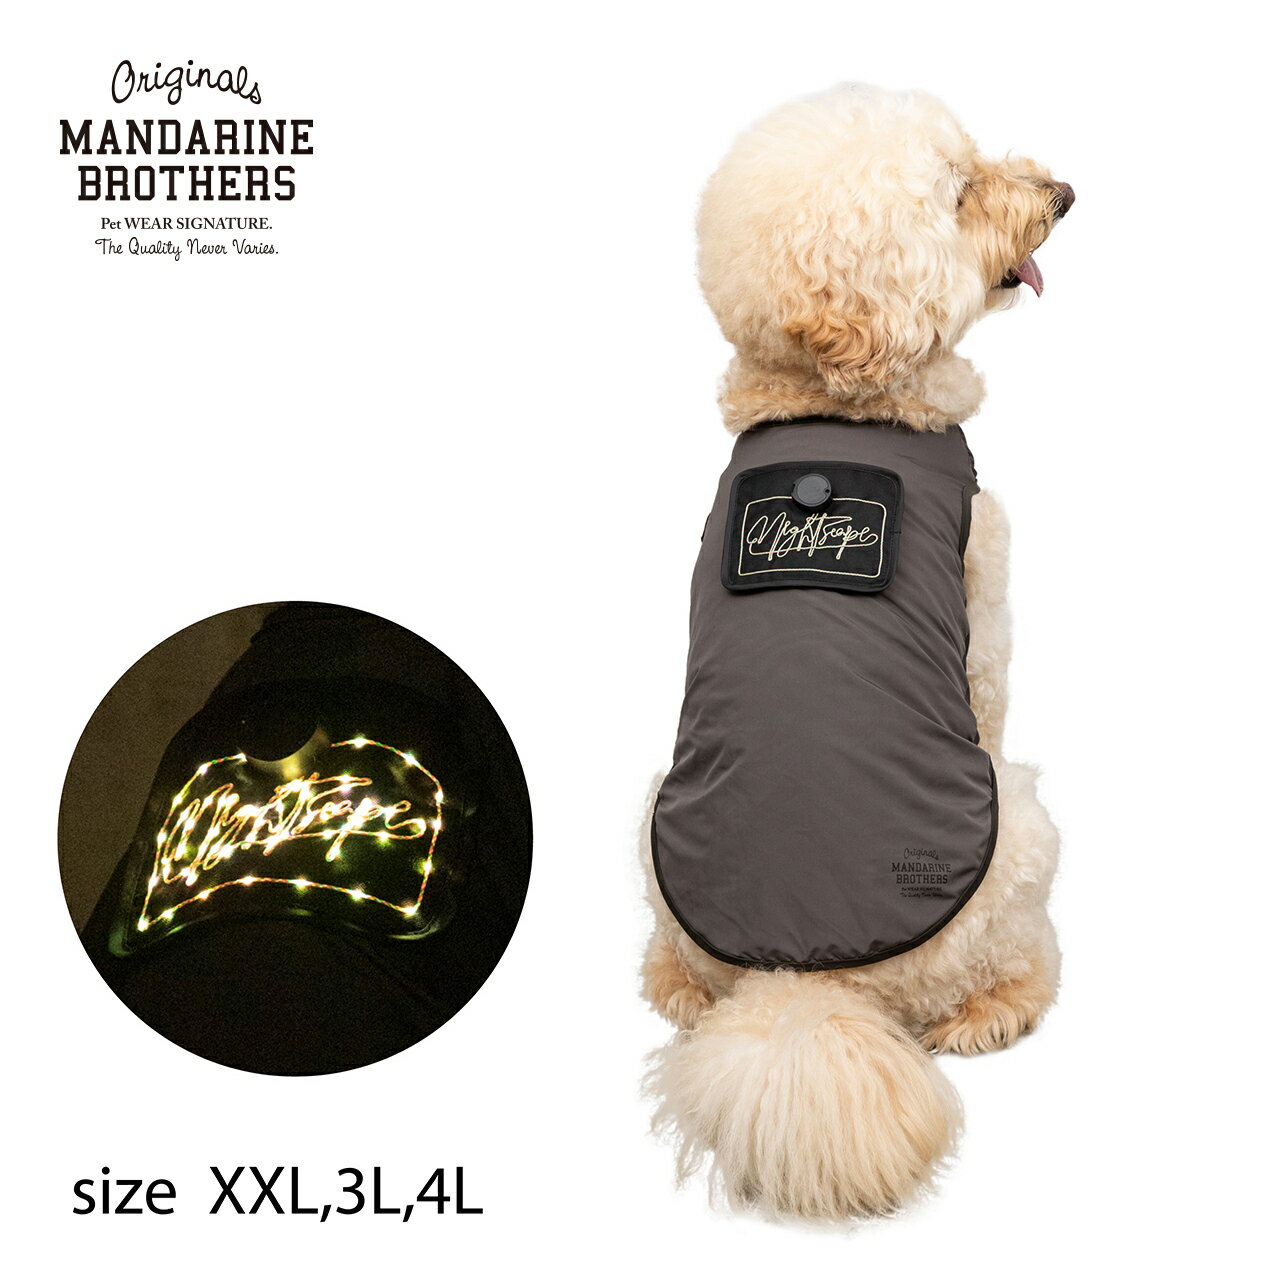 光る 洋服 犬服 犬 服ドッグウェア LED Tシャツ ライト 夜 散歩 大型犬 MANDARINE BROTHERS / NIGHTSCAPE LED T-SHIRT（XXL,3L,4L）